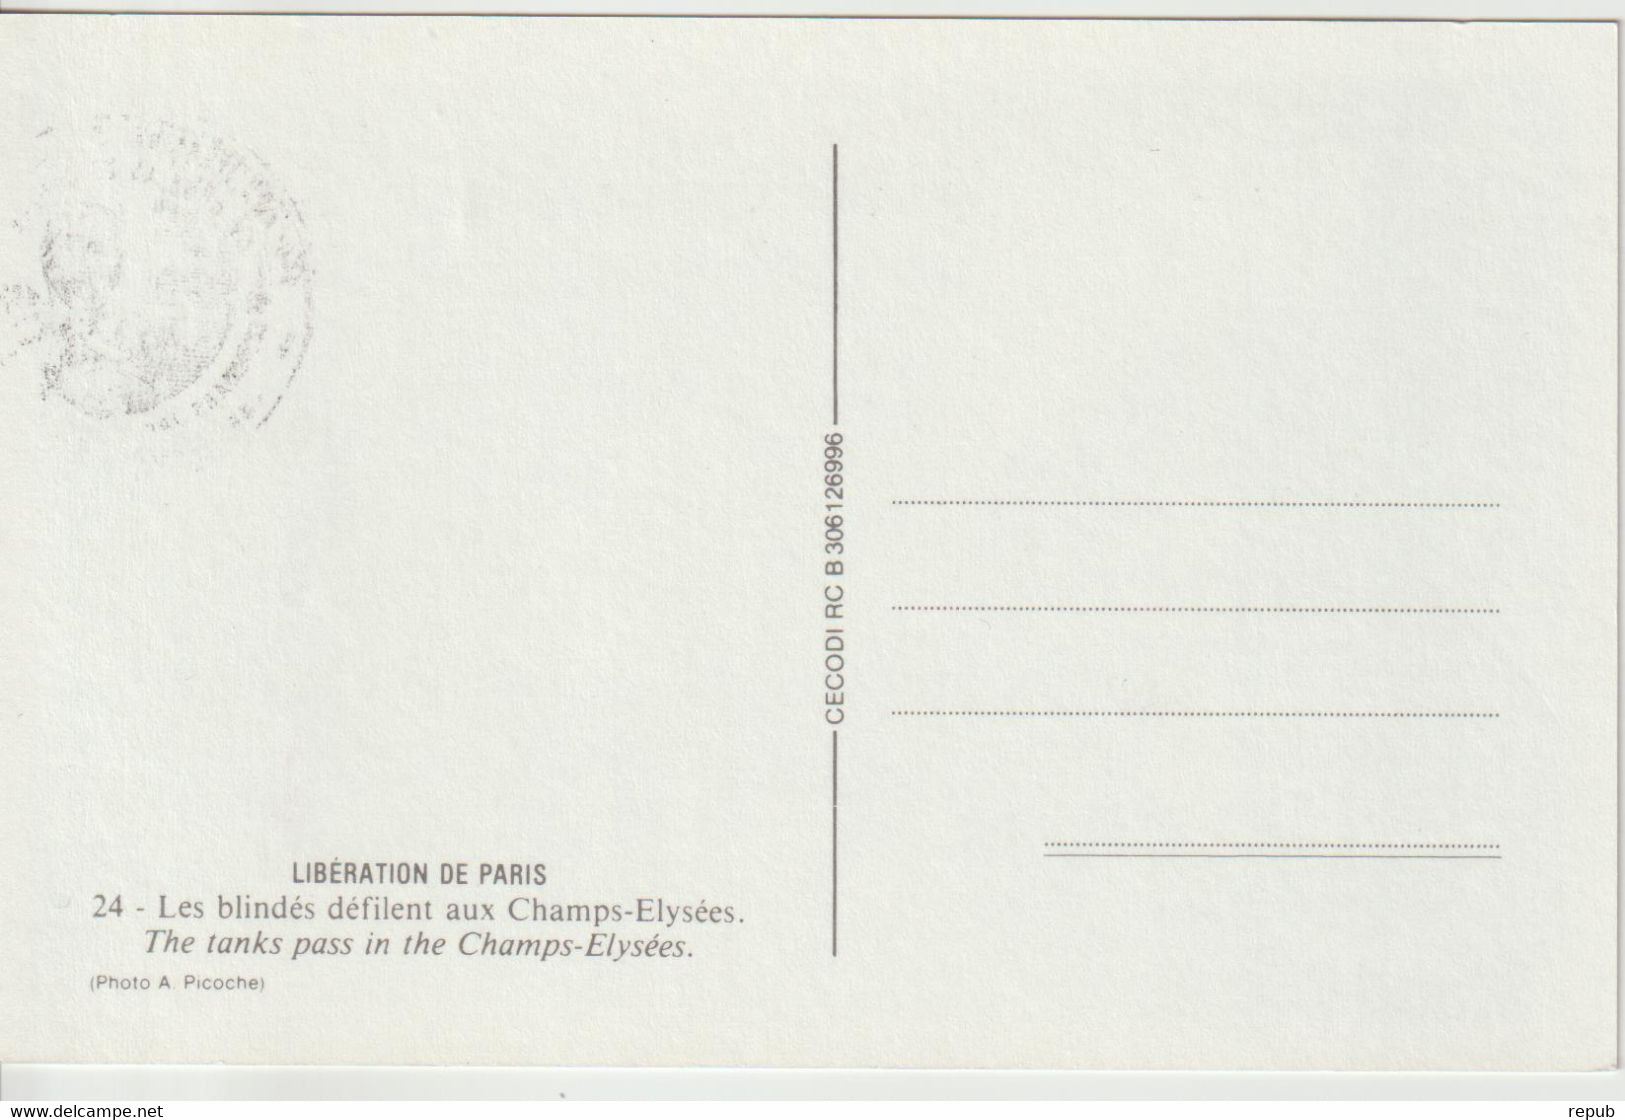 France 1990 Général De Gaulle Marcilly En Villette (45) - Cachets Commémoratifs